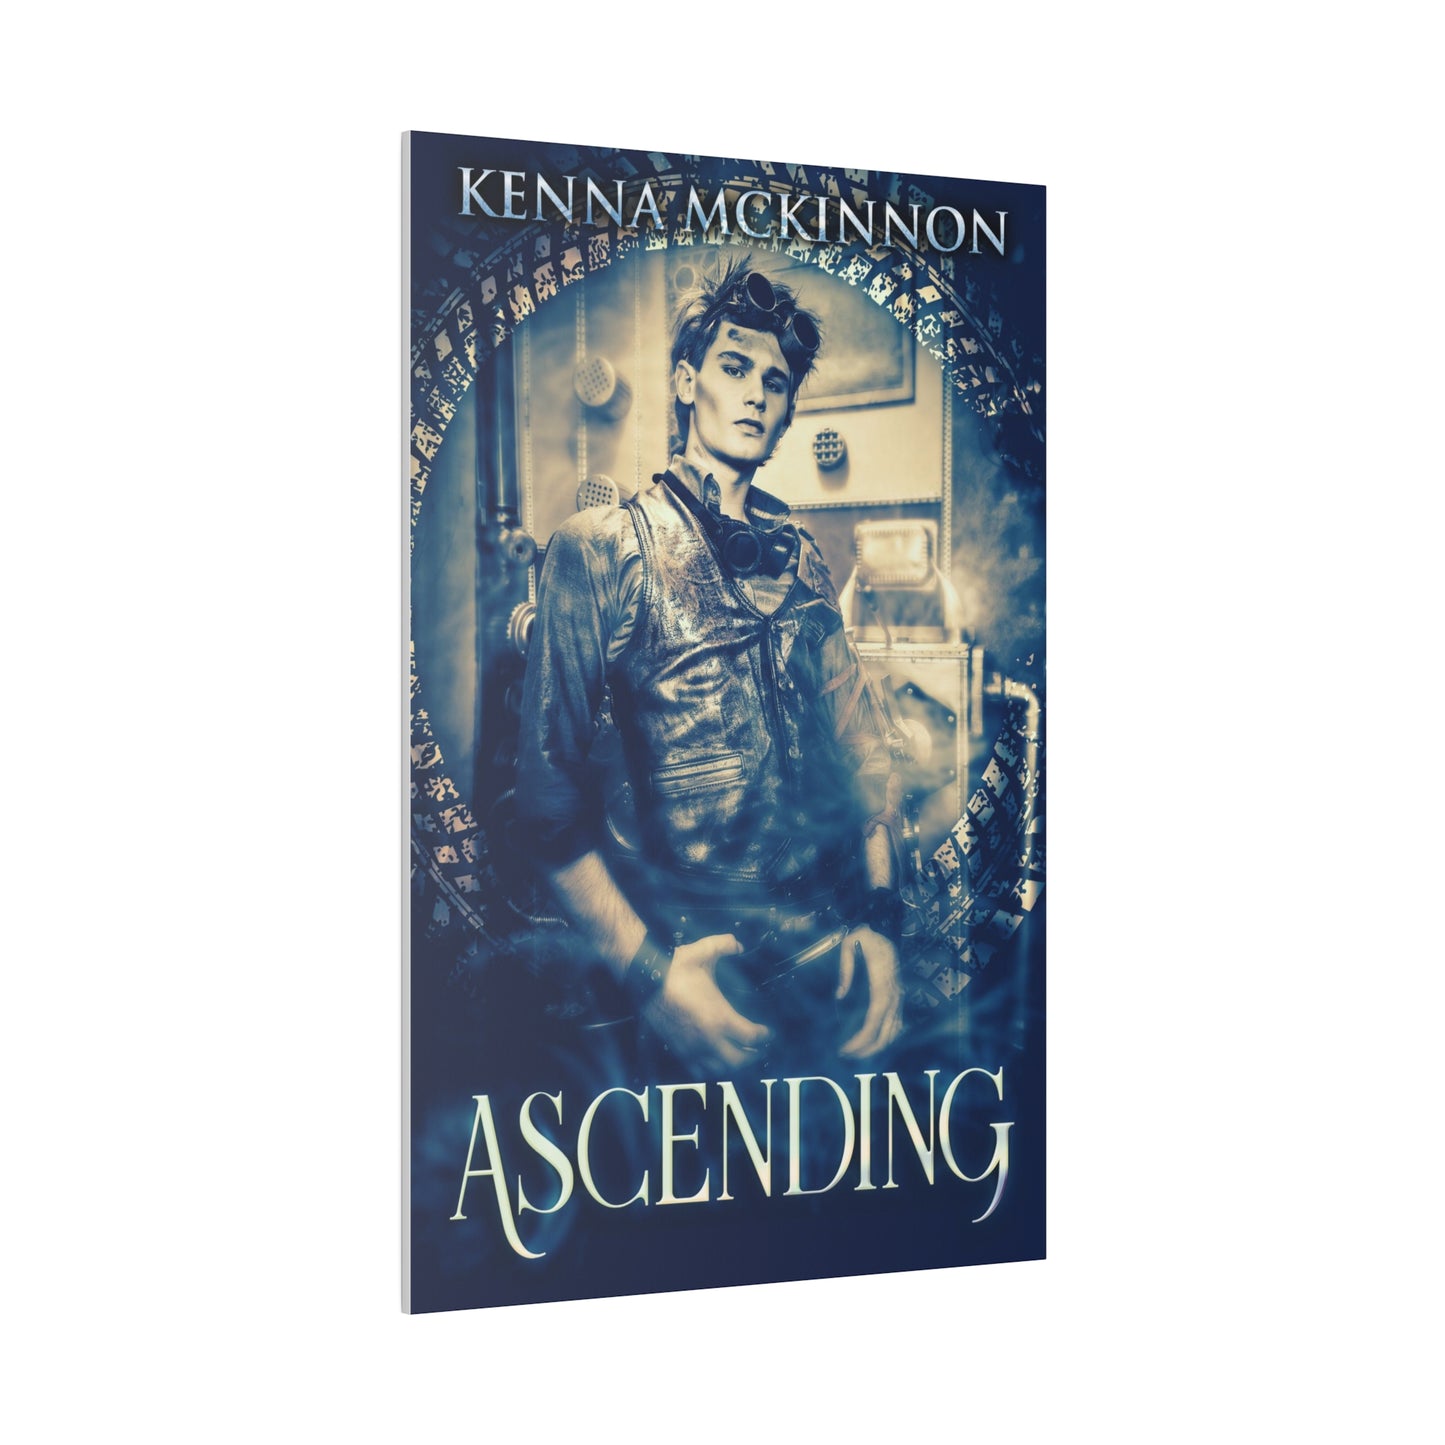 Ascending - Canvas